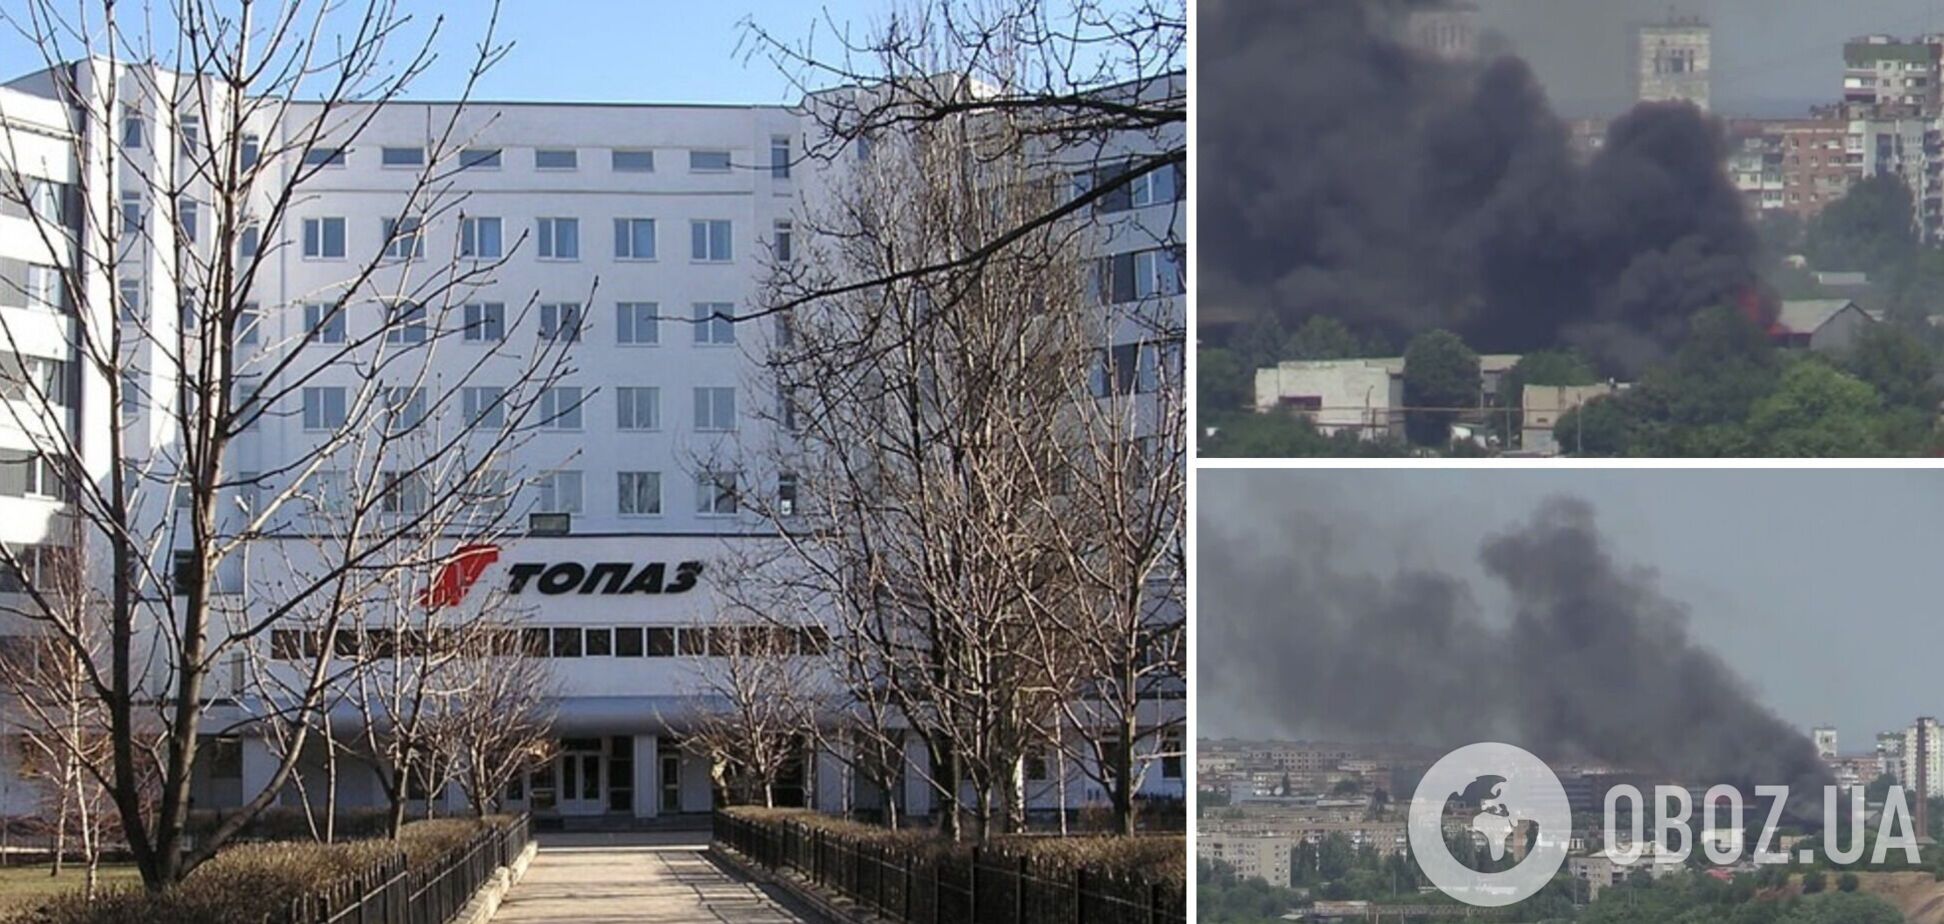 Вблизи завода 'Топаз' в Донецке вспыхнул пожар